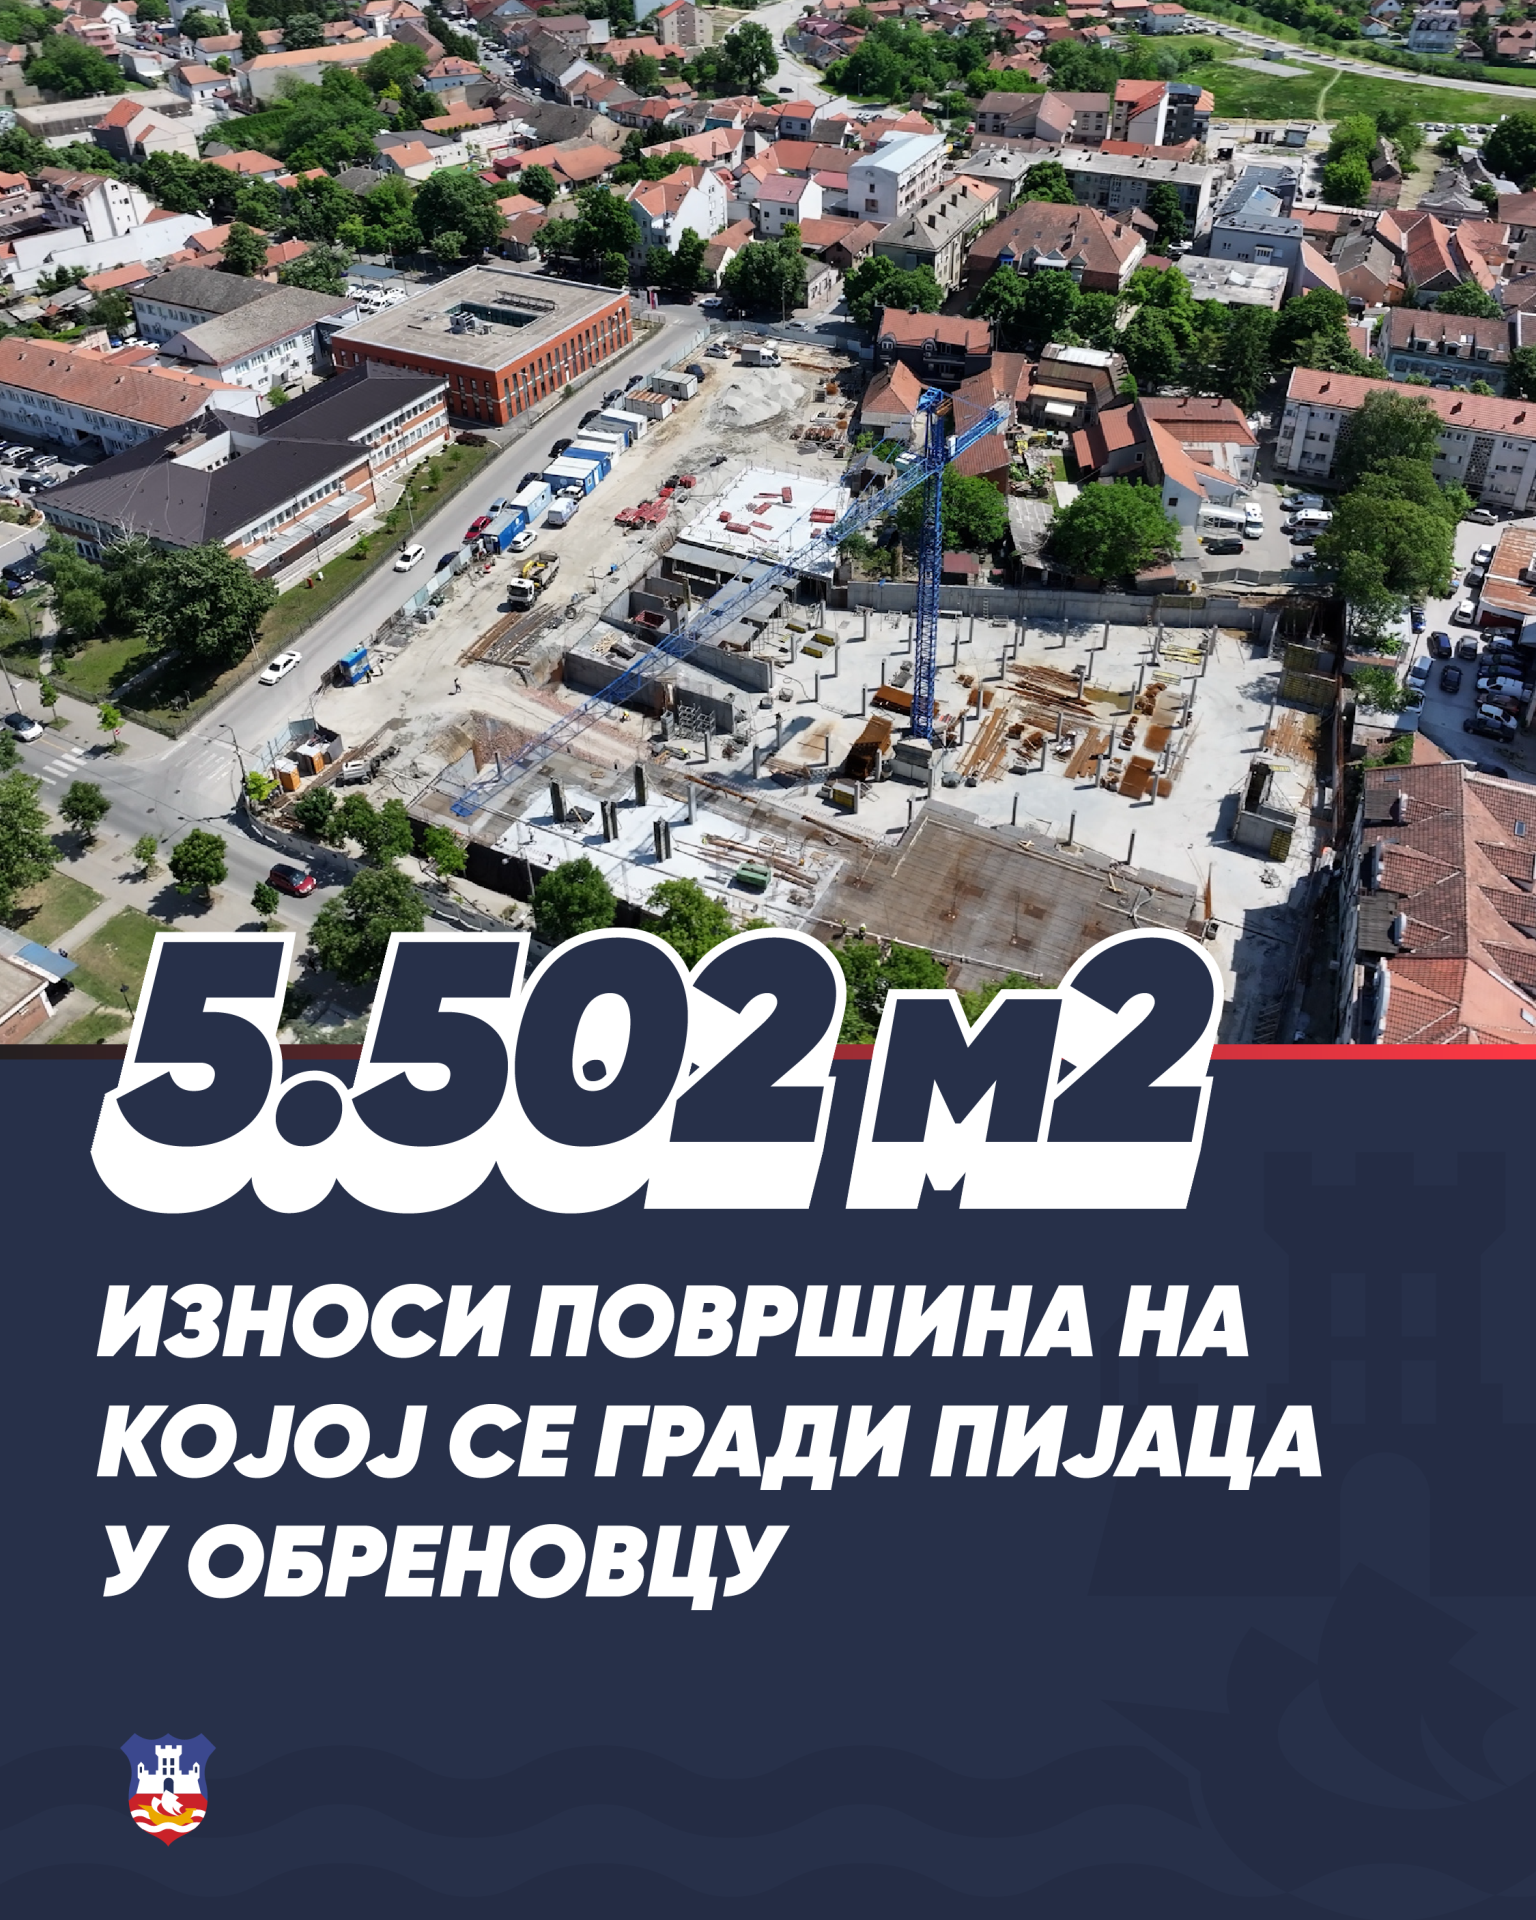 Brojke - Grad Beograd - 5.502 m2-01.png